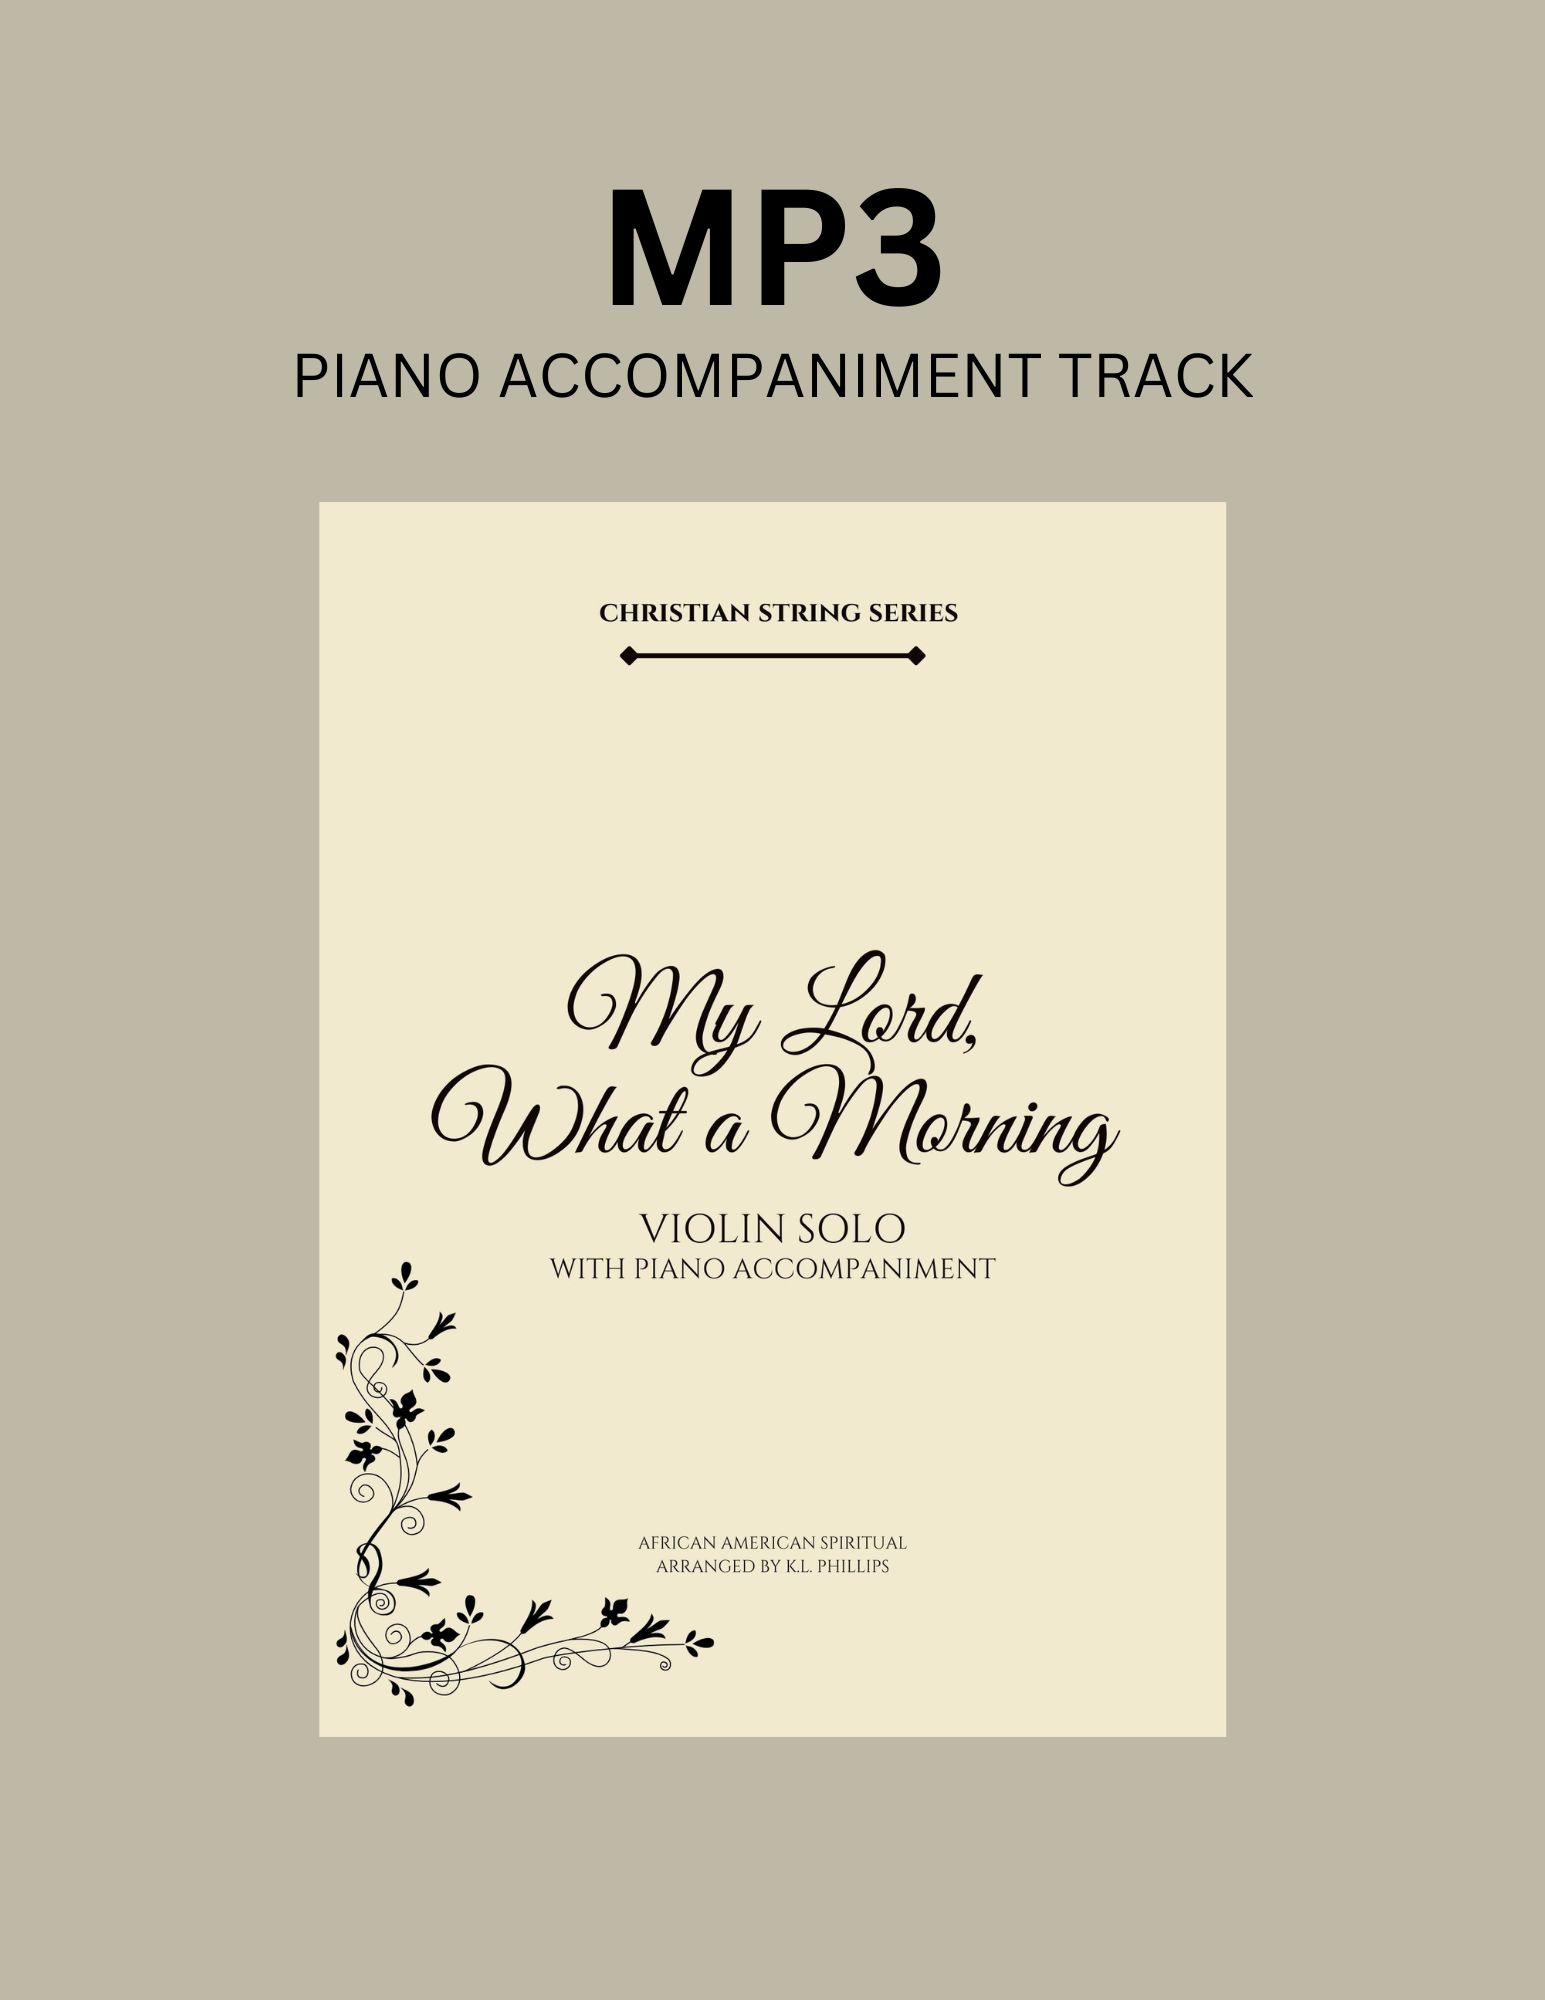 Copy of MP3 Piano Accompaniment Track